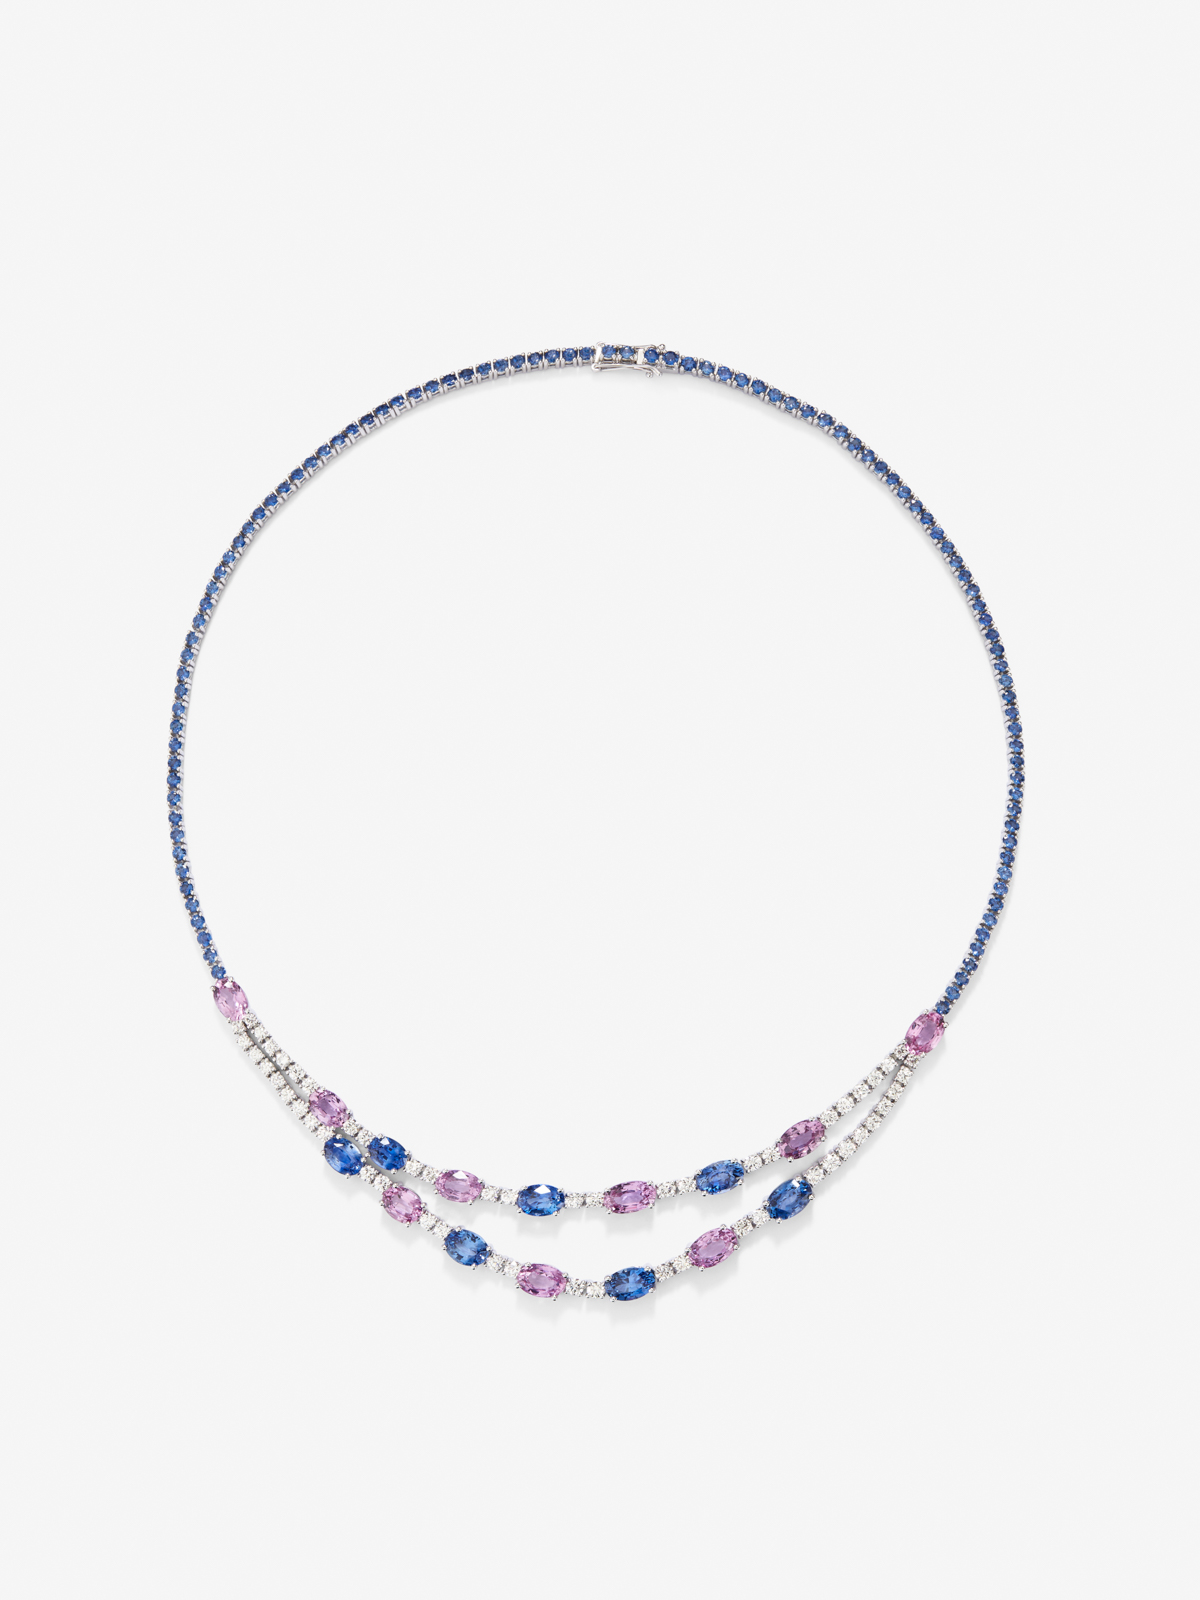 Collar de oro blanco de 18K con zafiros azules en talla oval de 15,7 cts, zafiros rosas en talla oval de 10,17 cts y diamantes blancos en talla brillante de 3,08 cts